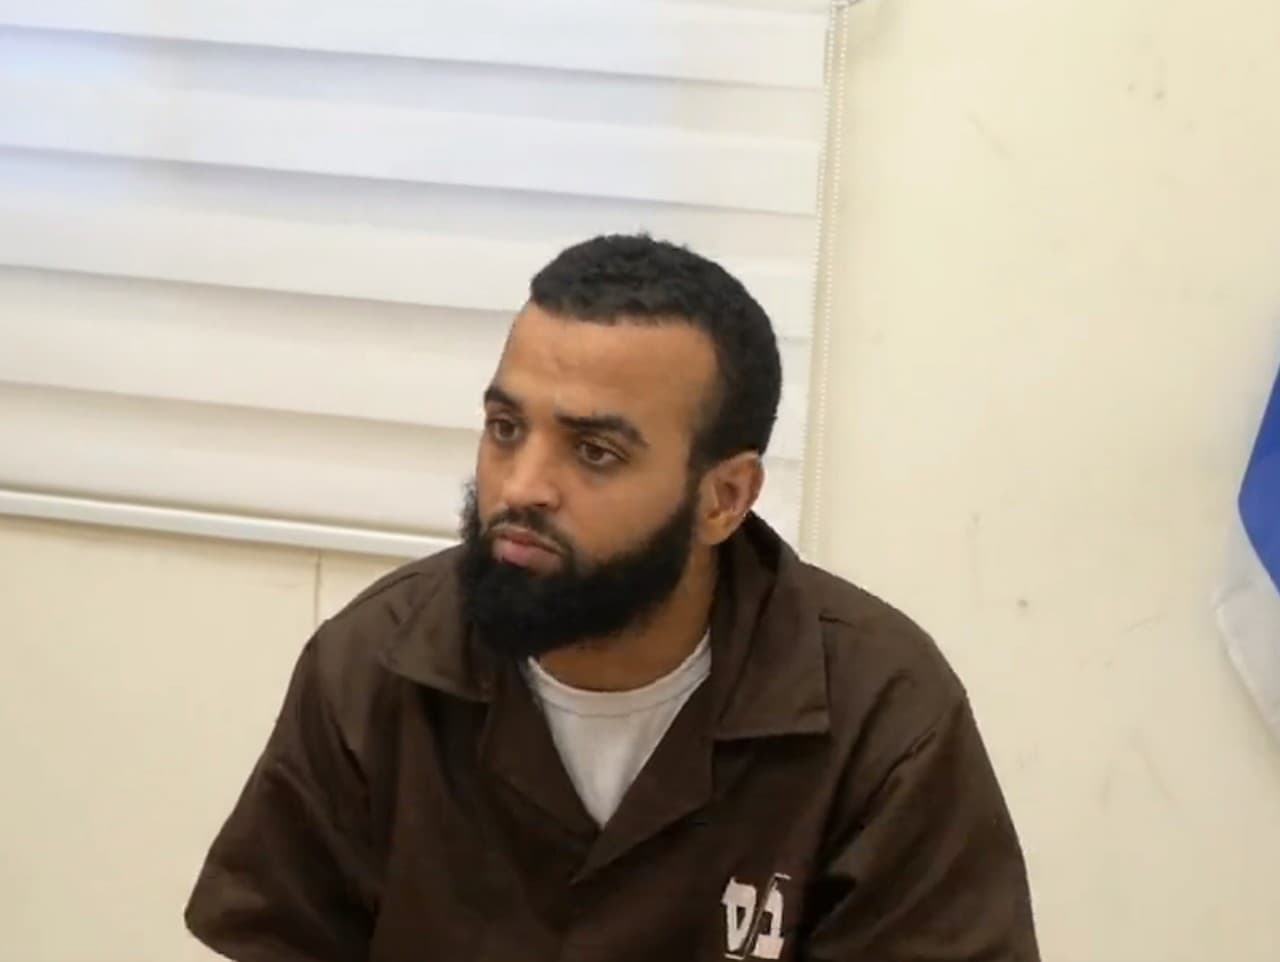 Podozrivý terorista zobrazený na videu hovorí o „podzemných úrovniach“ pod nemocnicou Šífa.